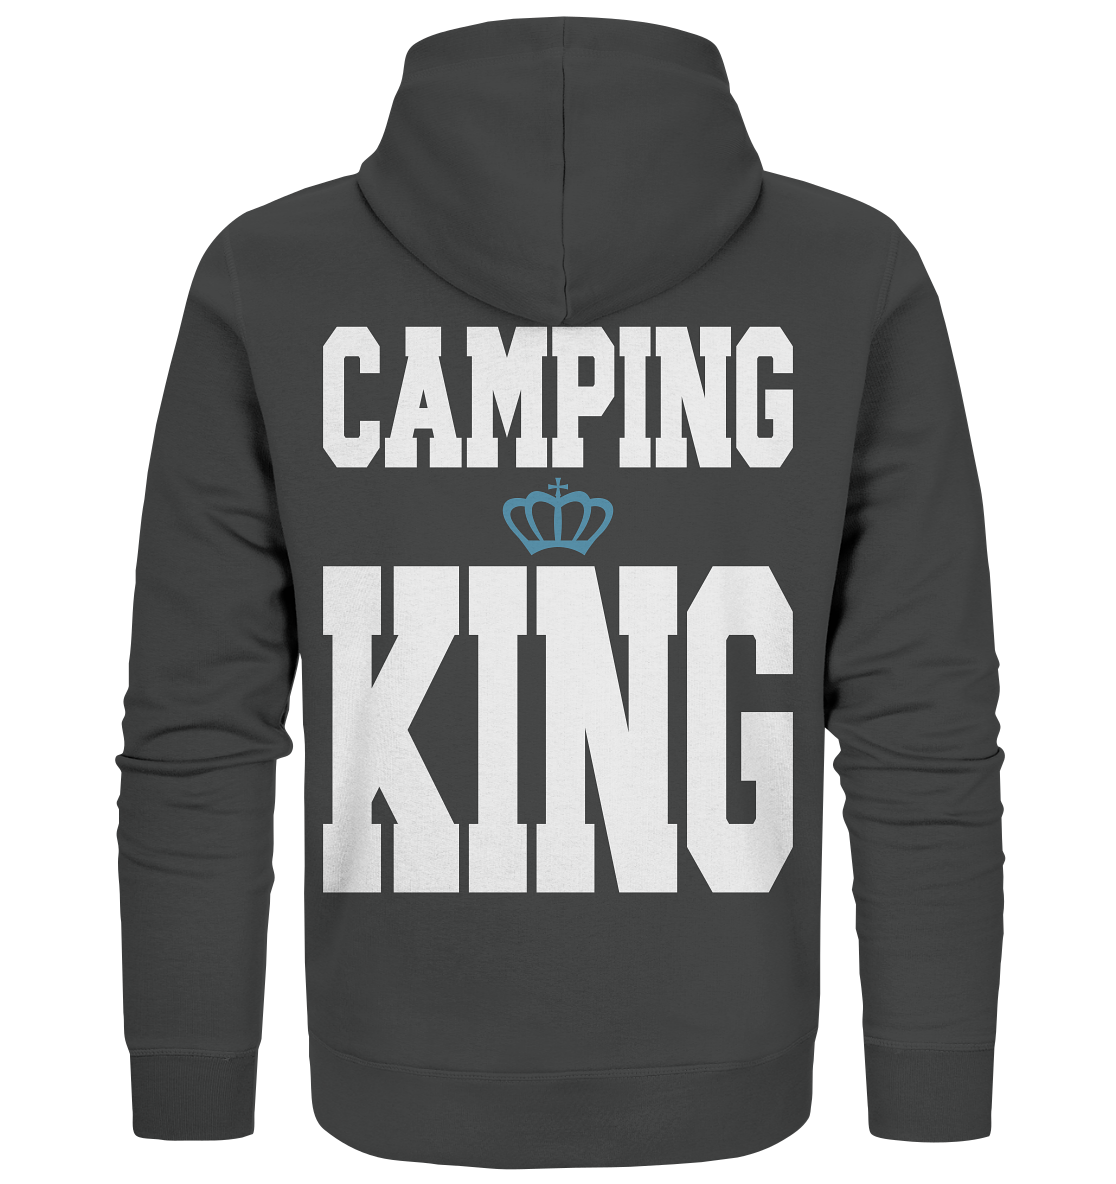 Camping King - Organic Zipper